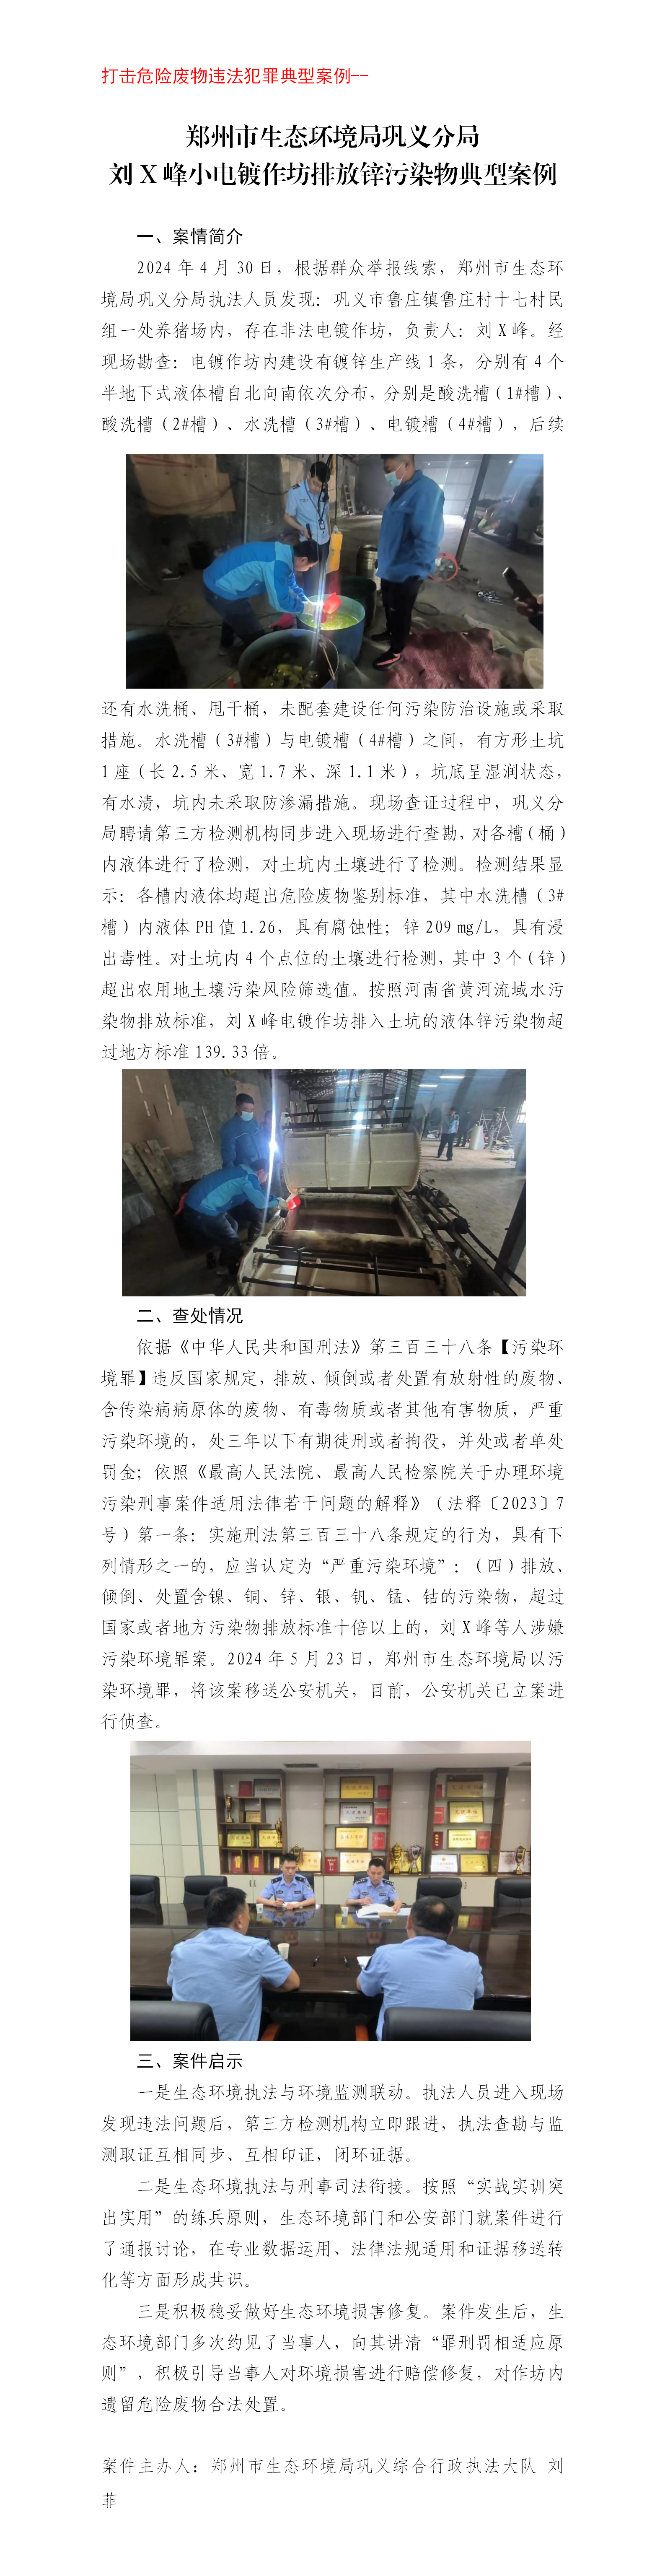 两打 刘某甲小电镀作坊排放锌污染物典型案例 郑州市生态环境局巩义分局(1)_01.png